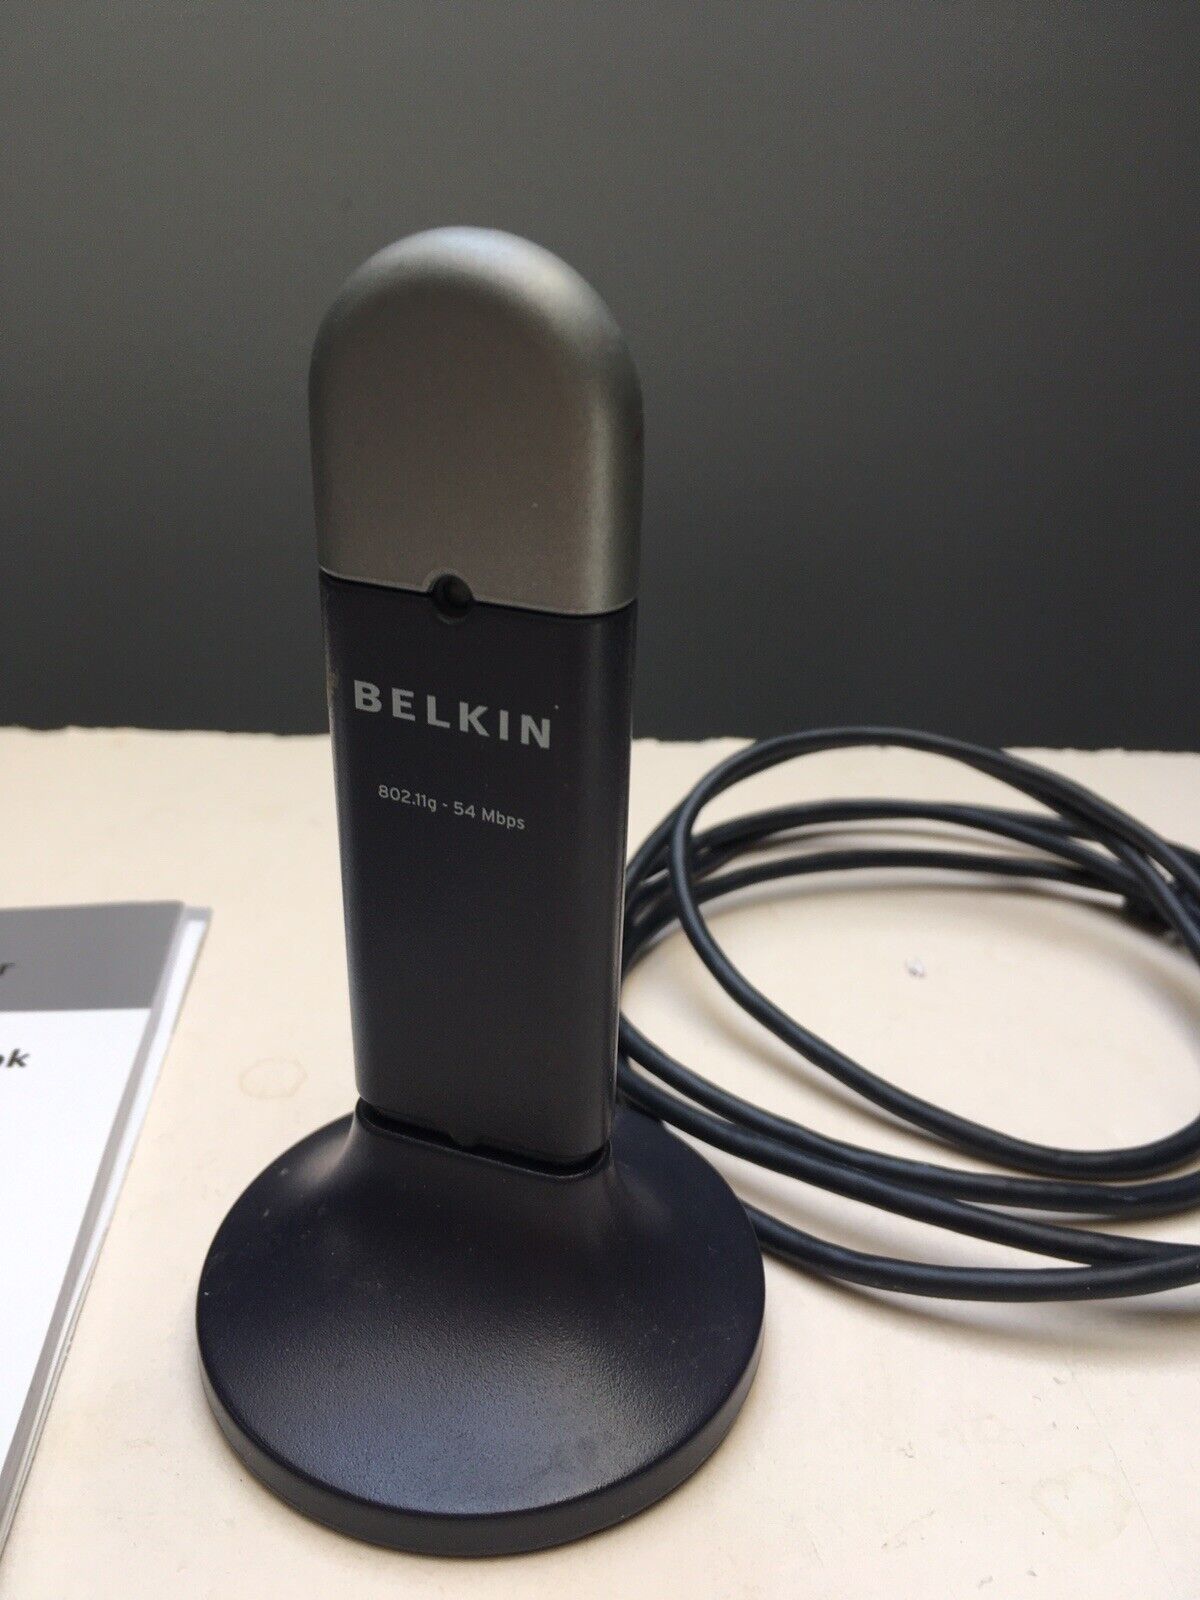 Belkin F5D7050 (722868501740) Wireless Adapter